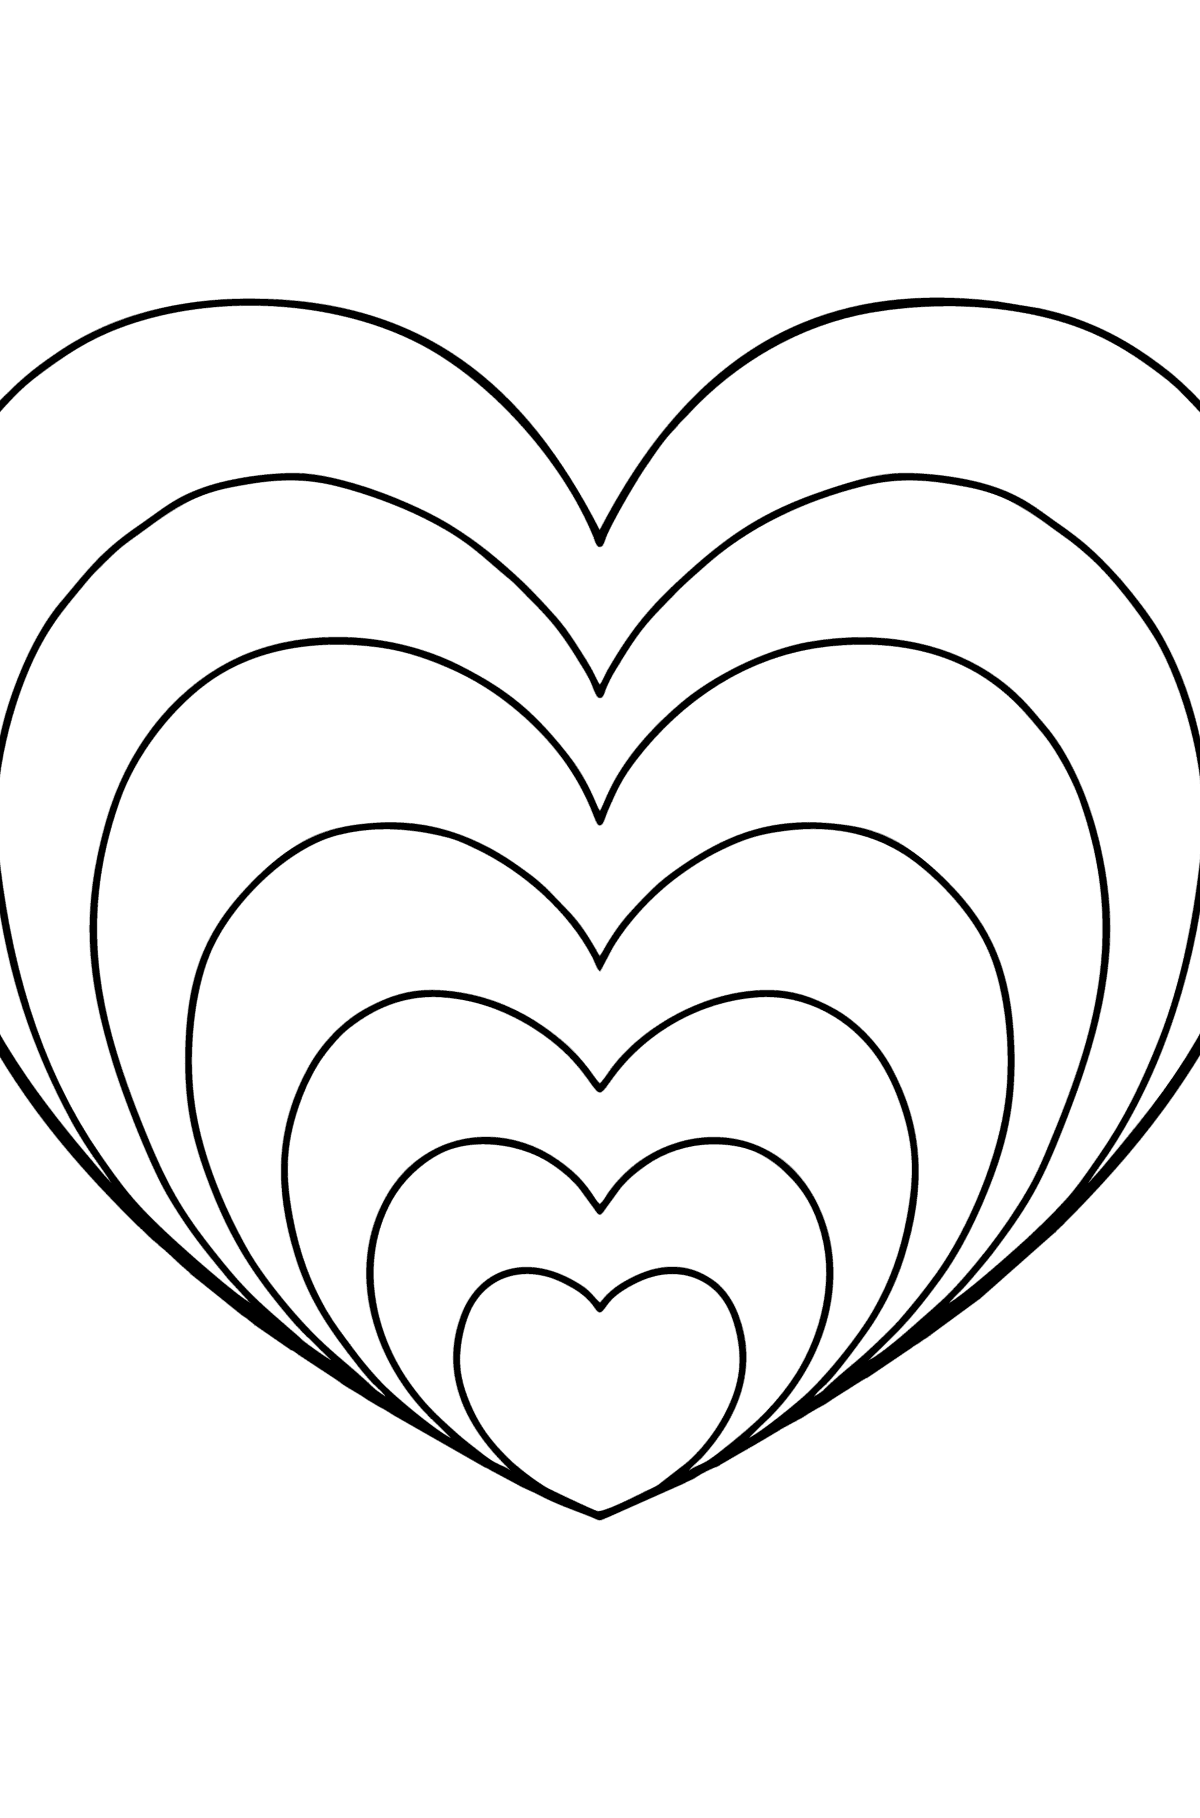 Раскраска Сердце  в стиле Дзен - Картинки для Детей